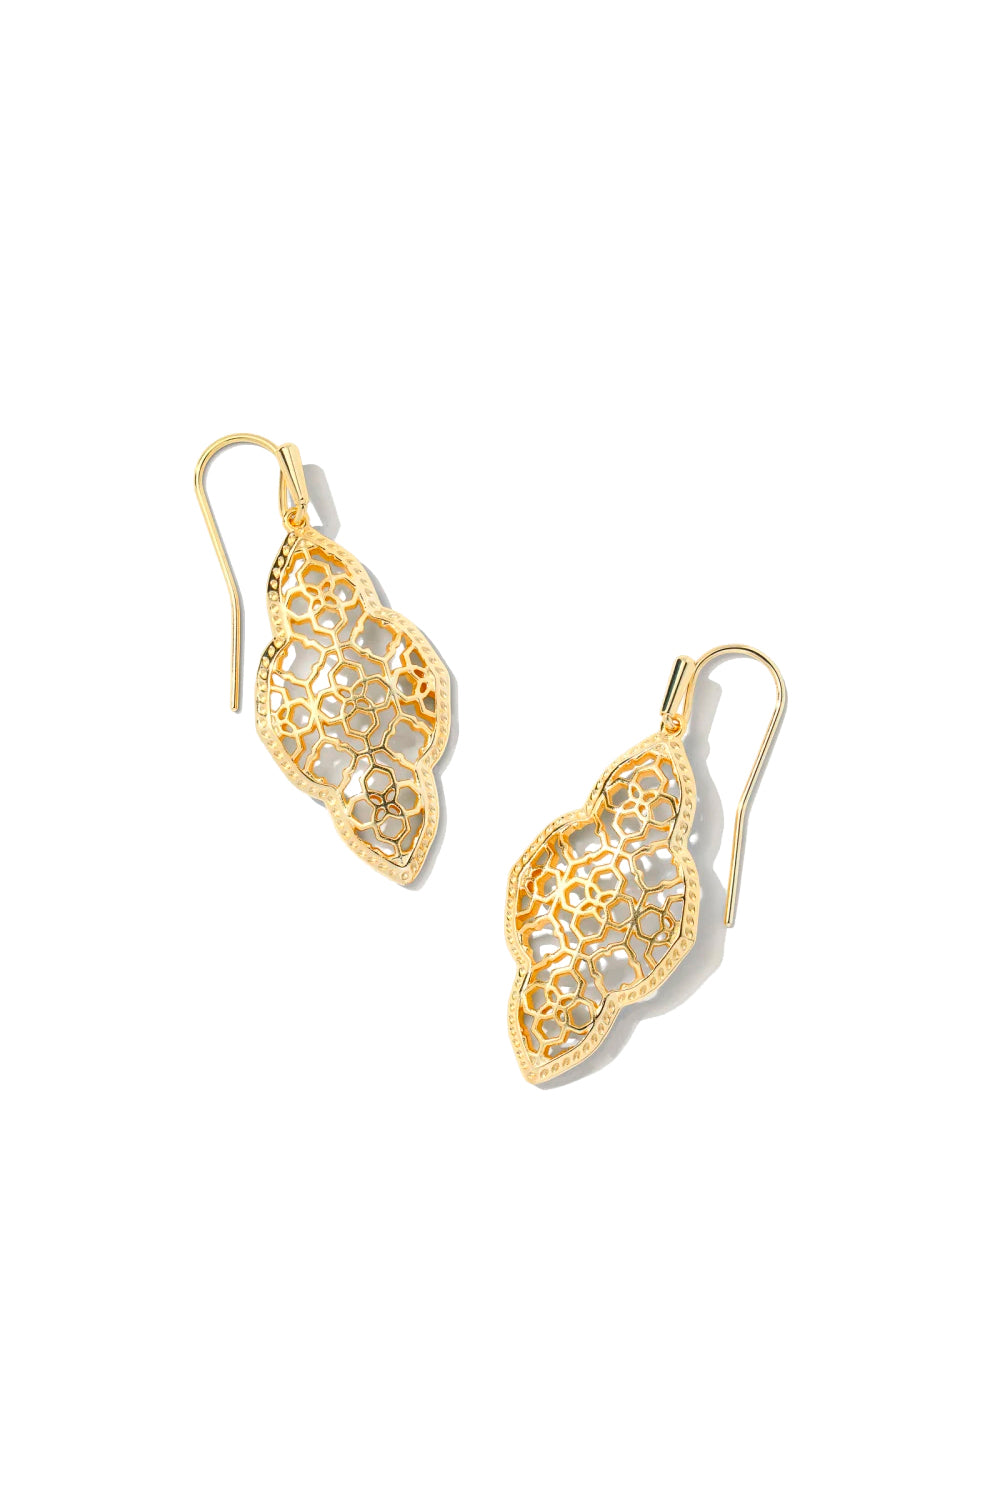 Kendra Scott: Abbie Drop Earrings - Gold | Makk Fashions